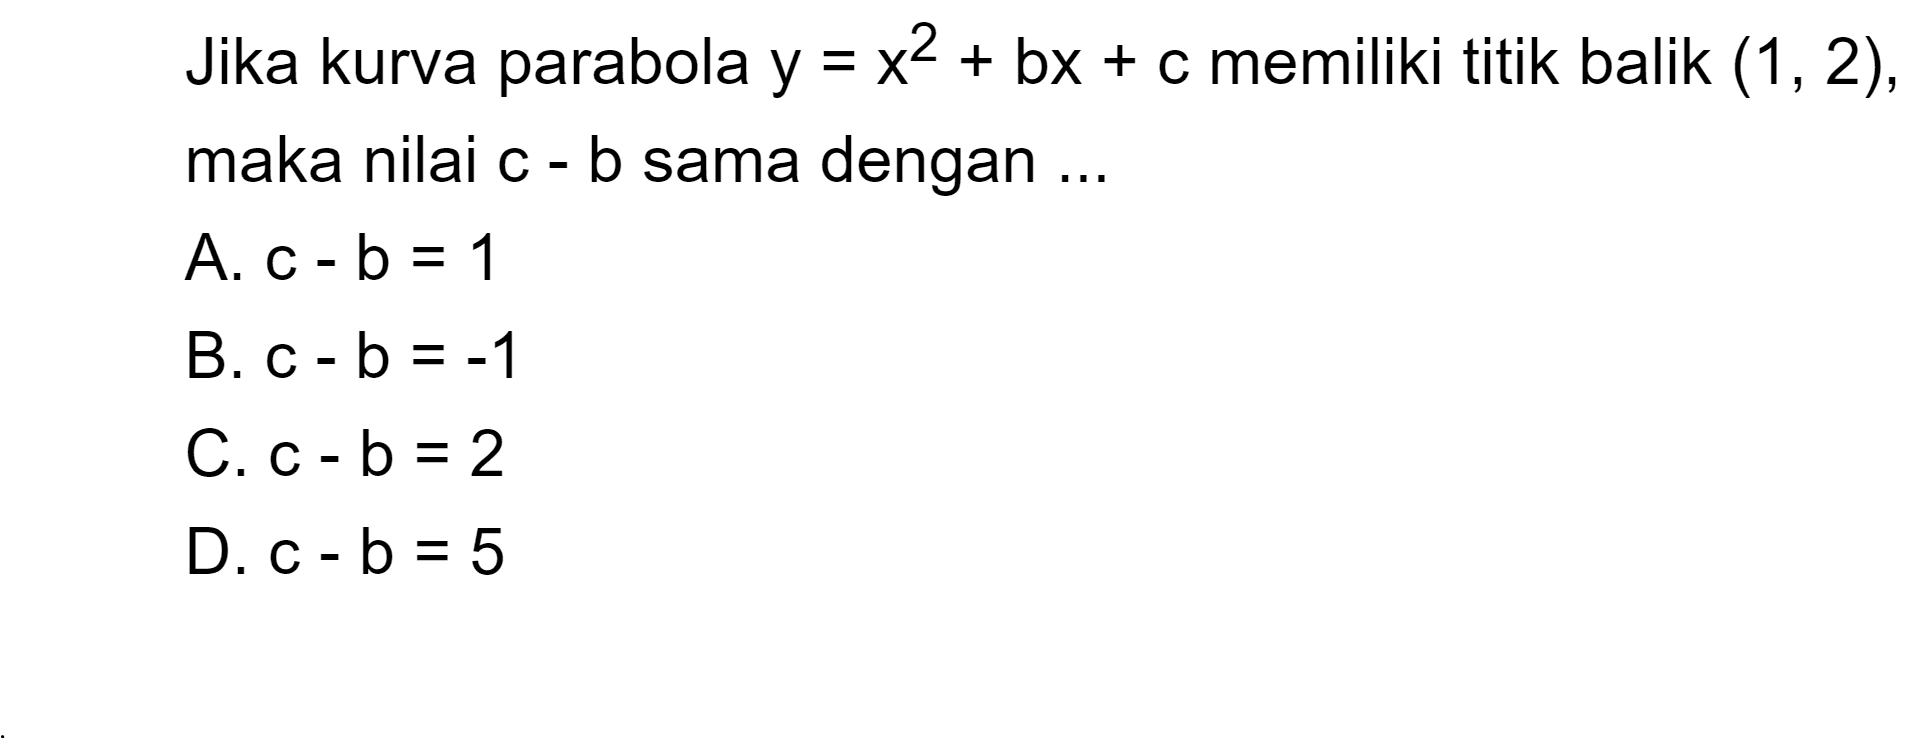 Jika kurva parabola y = x^2 + bx + c memiliki titik balik (1, 2), maka nilai c - b sama dengan ...